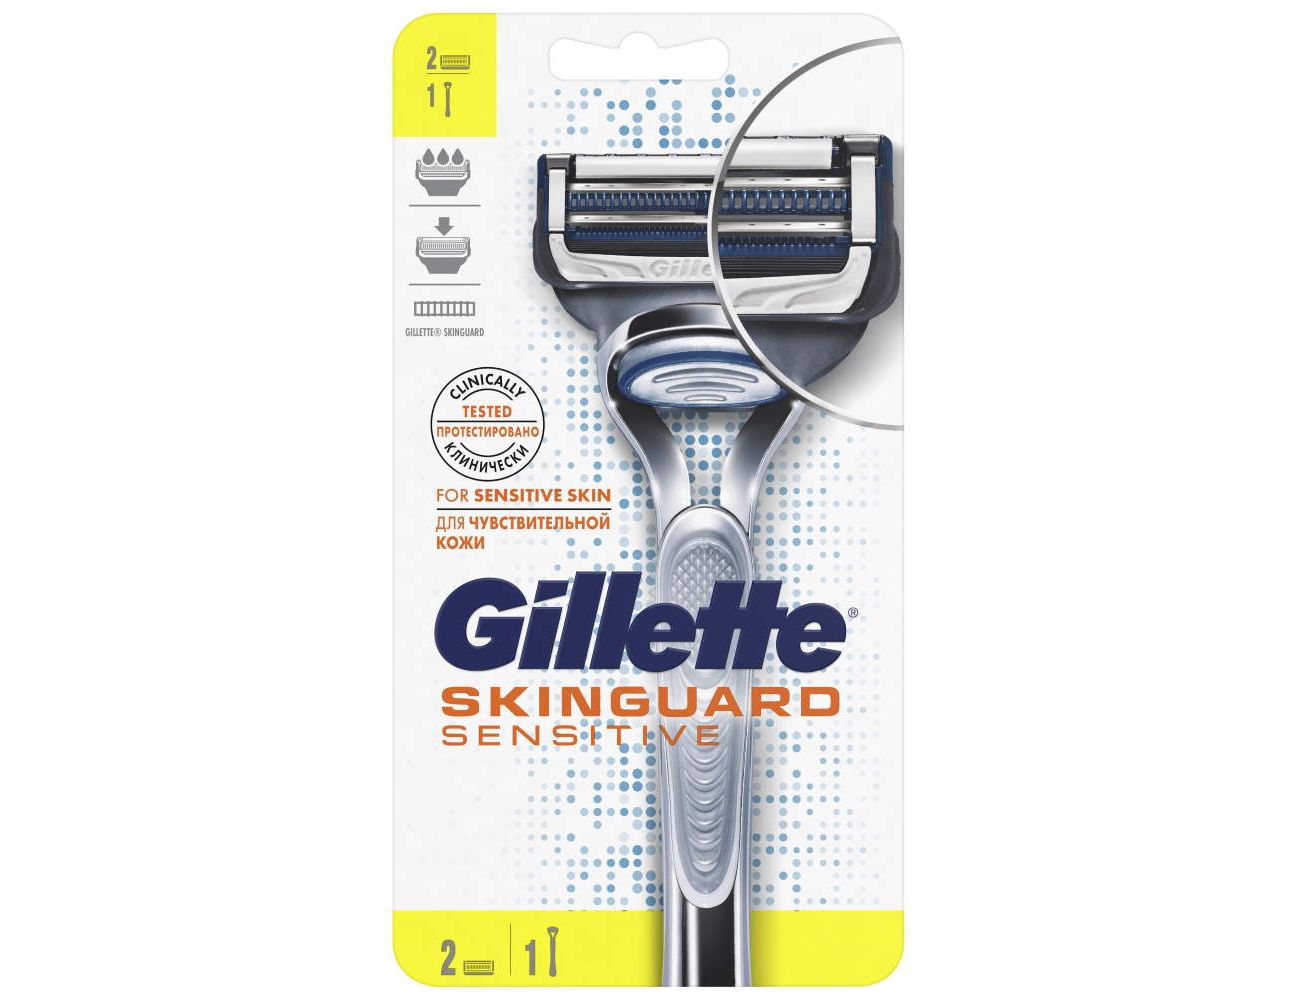 Бритва Gillette Skinguard Sensitive с 2 кассетами 7702018488148